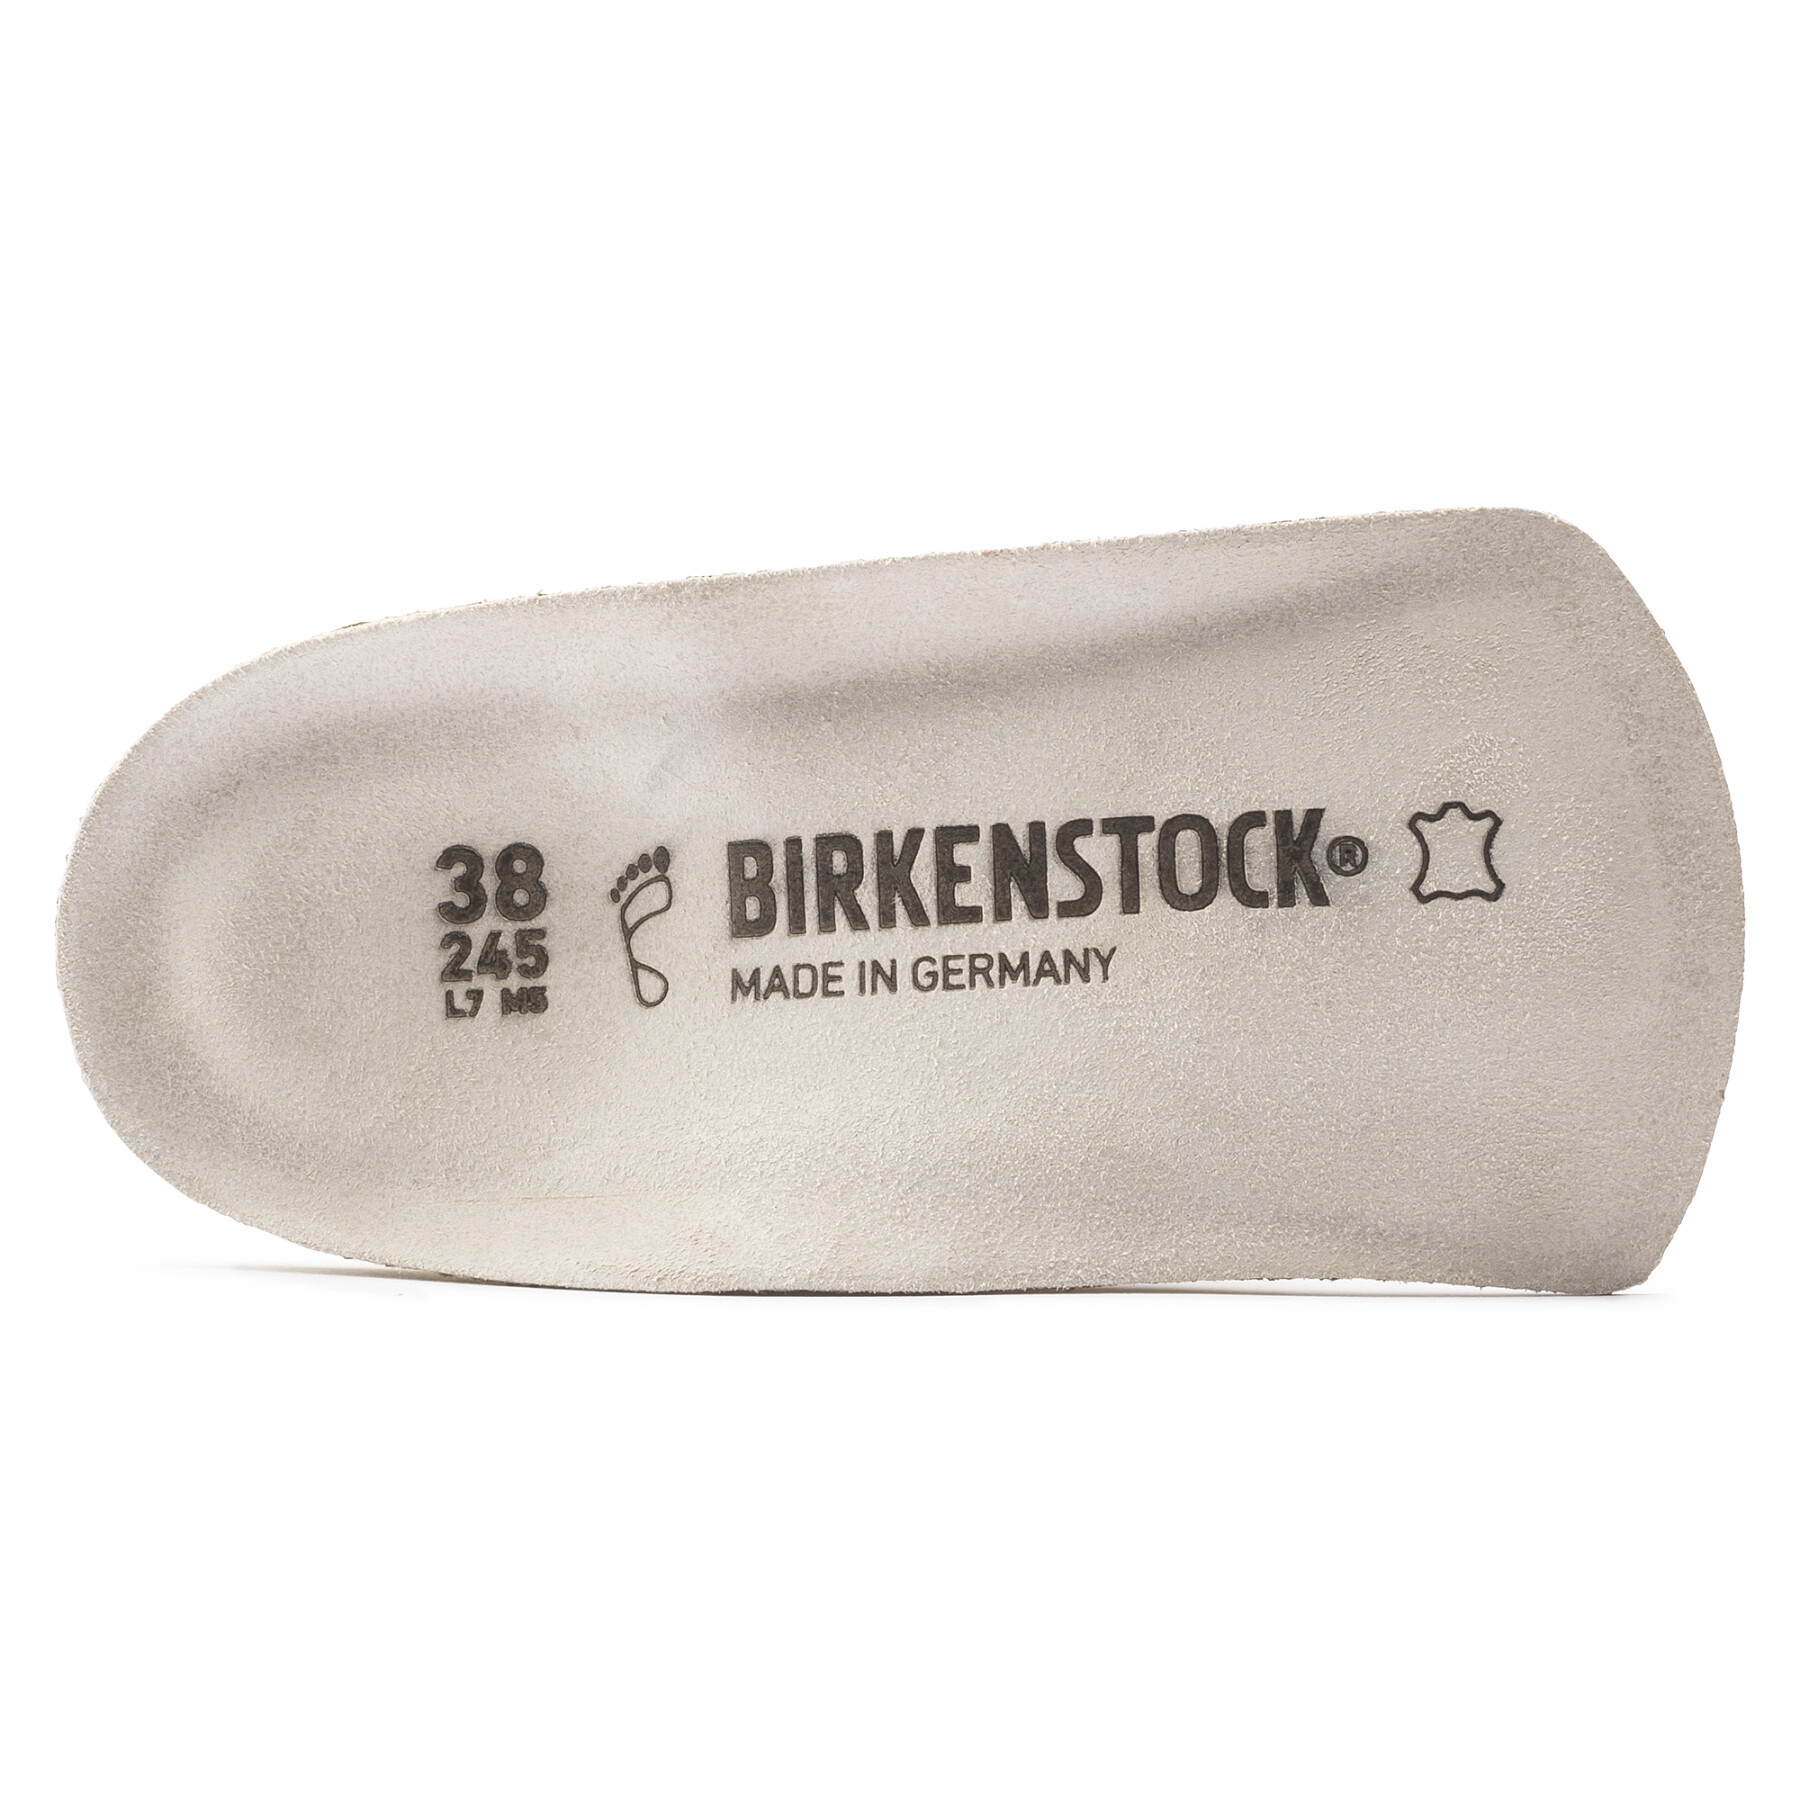 Zolen Birkenstock Birko Natural Leather